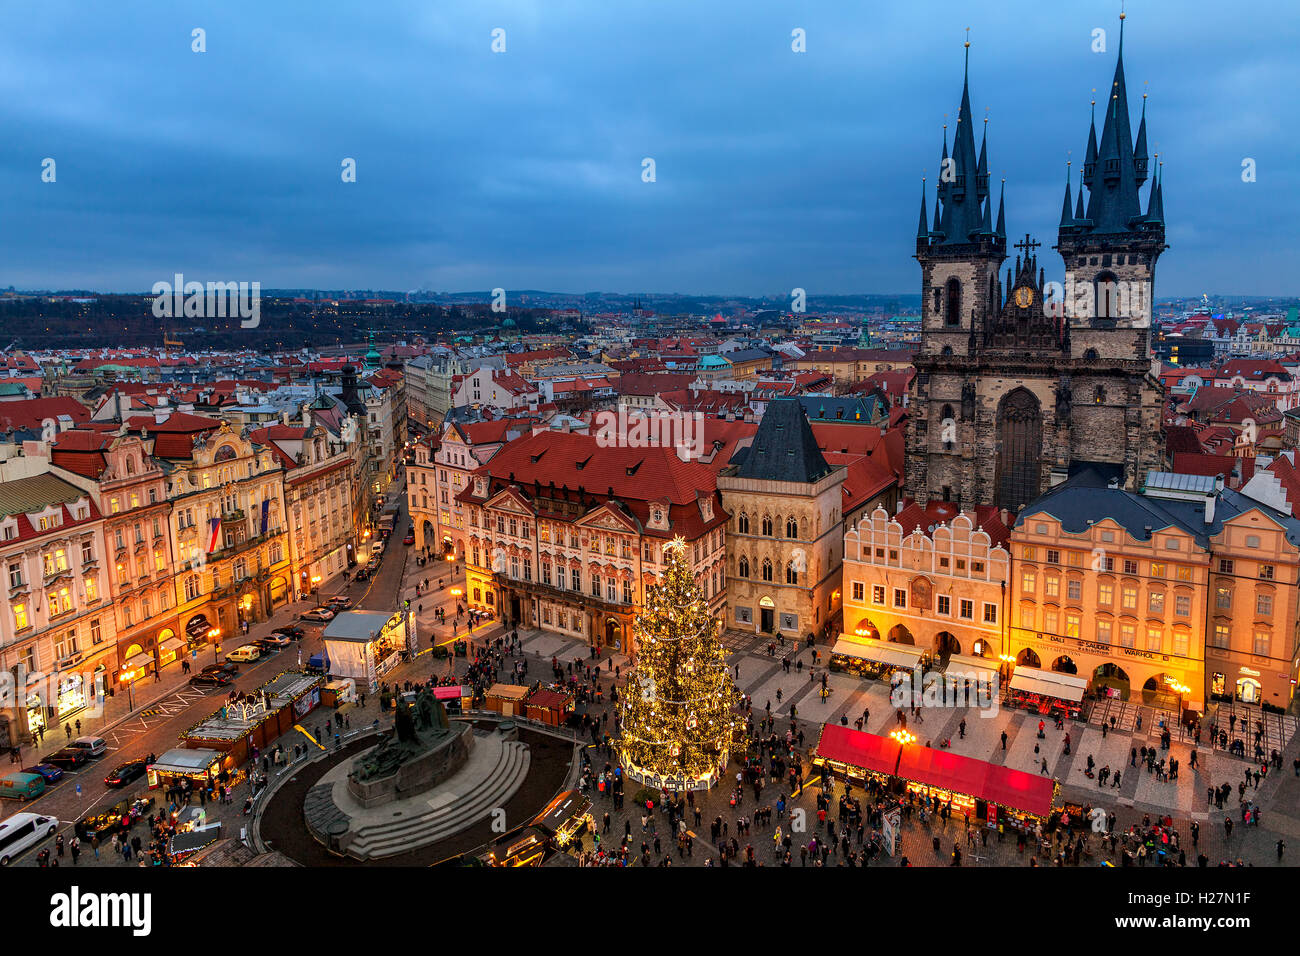 Blick von oben auf Tyn Kirche, Weihnachtsbaum und traditionellen Markt in der Altstadt von Prag. Stockfoto